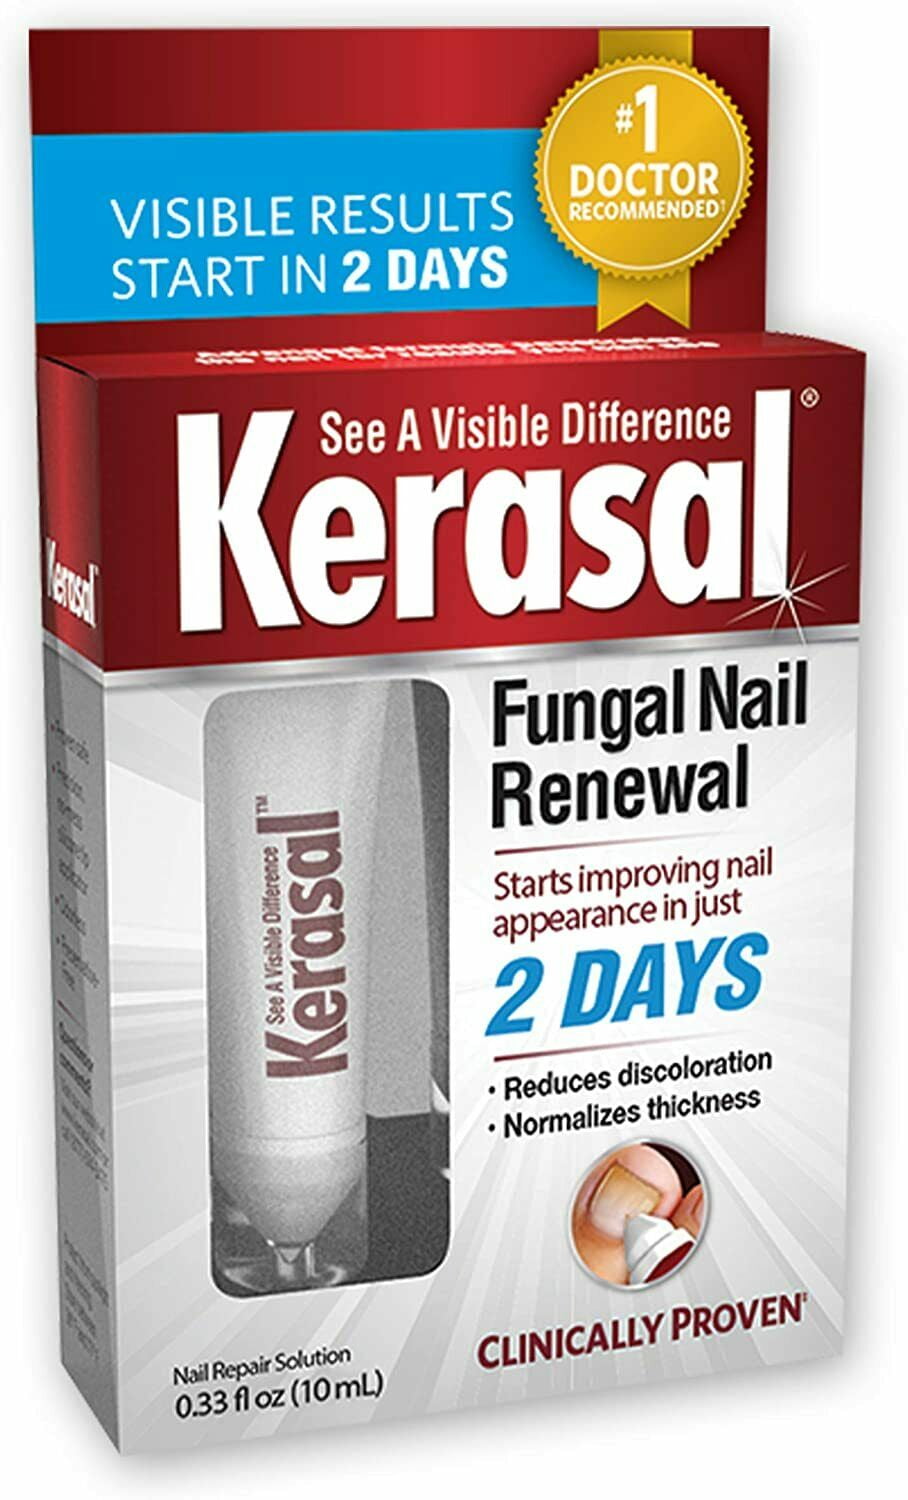 Kerasal Nail Fungal Nail Renewal Treatment from nail fungus 10 mL / 0.33 oz  NEW 885245659578 | eBay